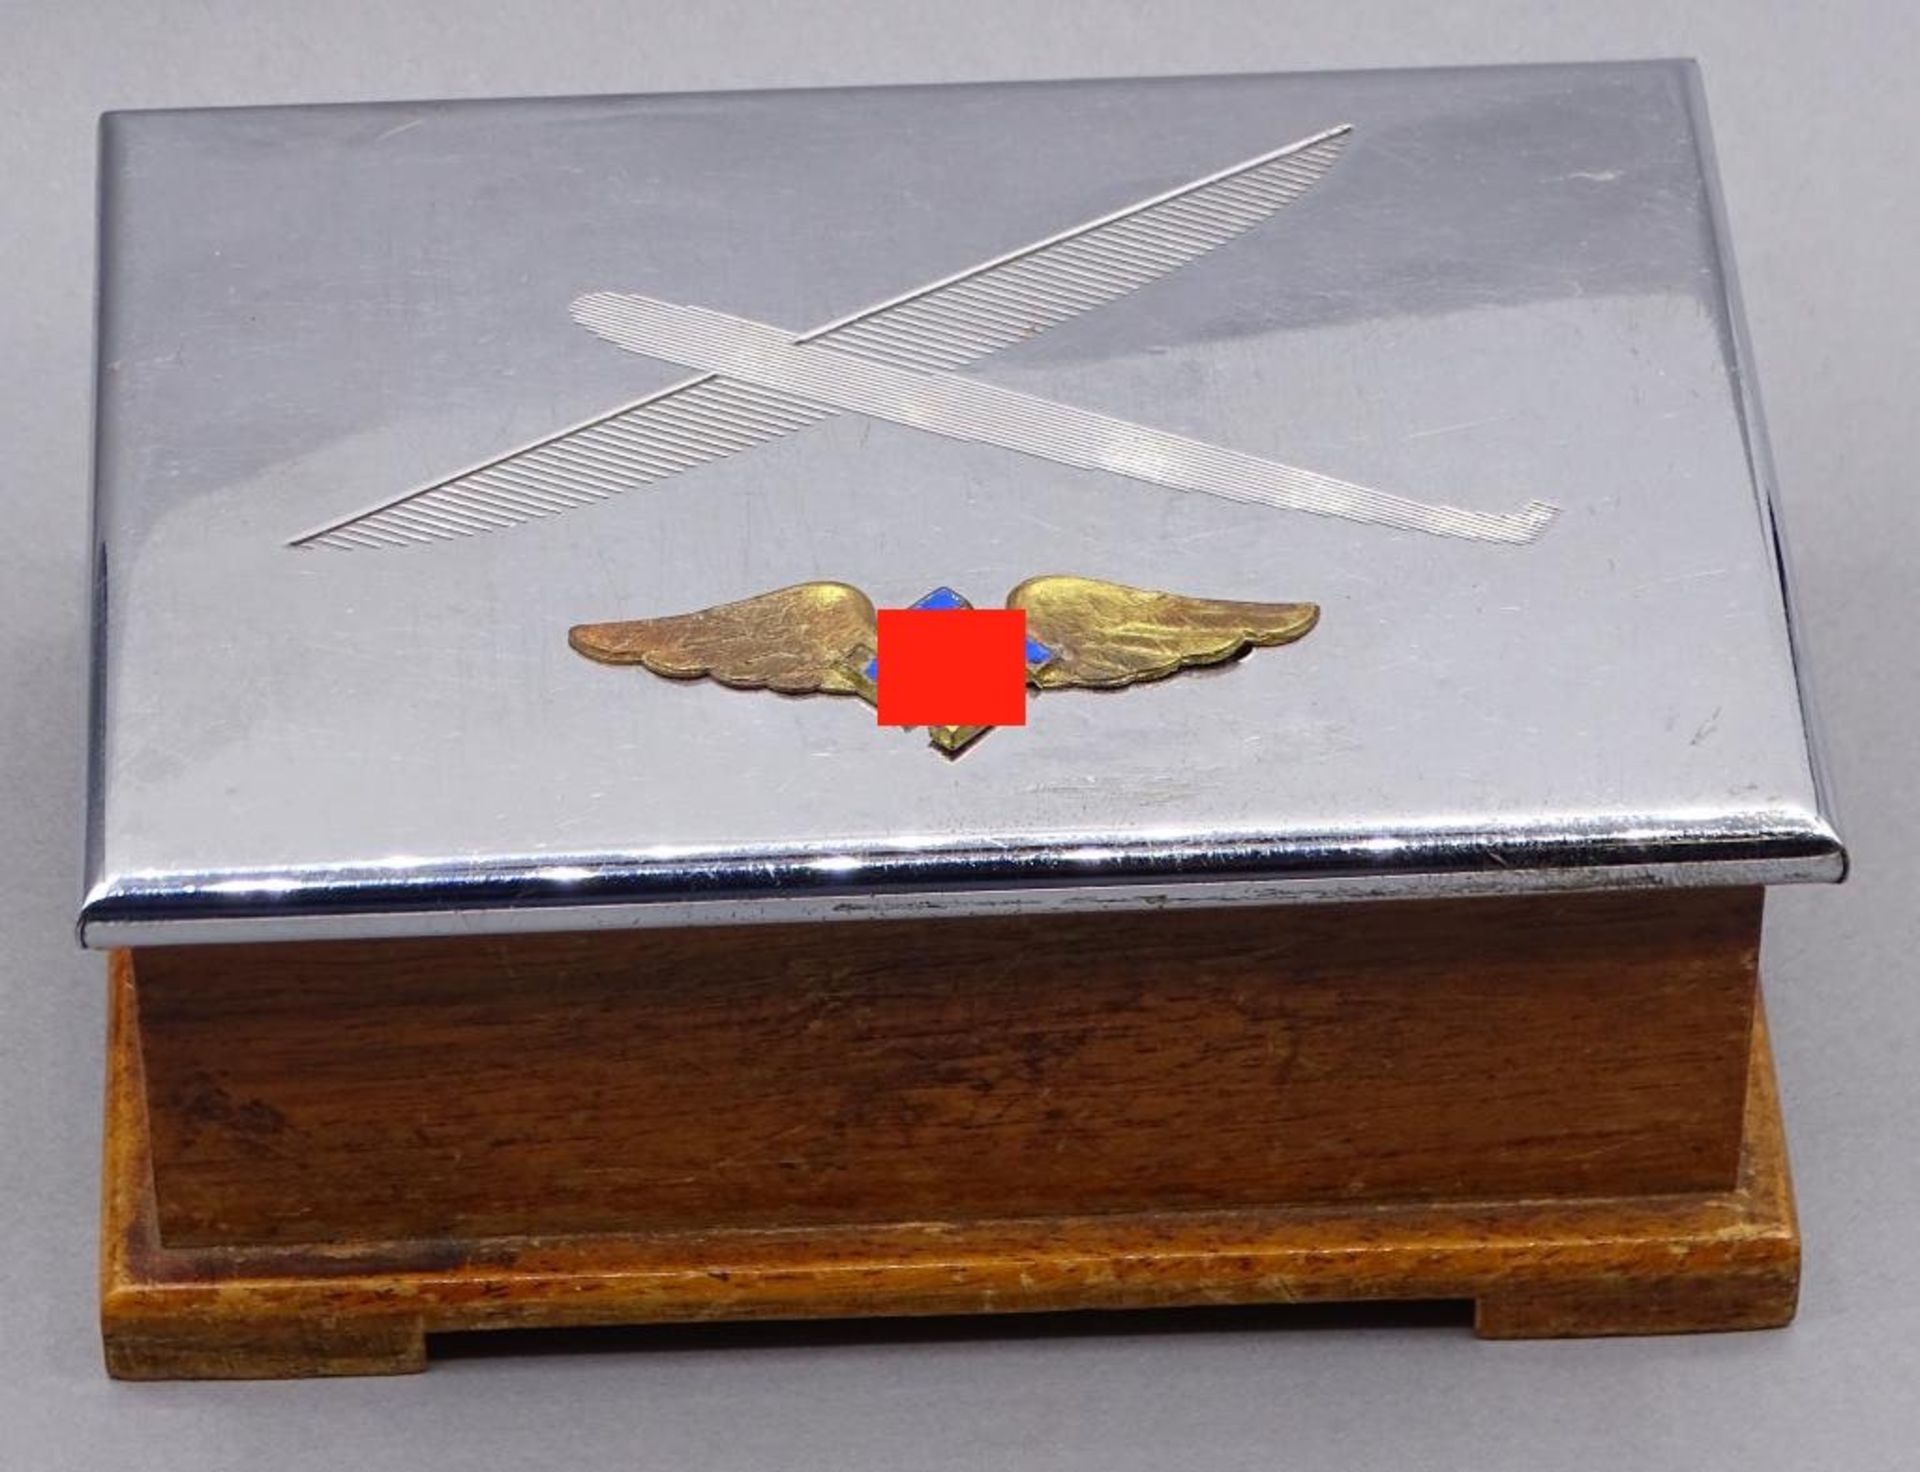 Deckeldose mit Fliegersymbol und Hoheitszeichen,versilbert,H- 5,0cm, 13x9,5cm- - -22.61 % buyer's